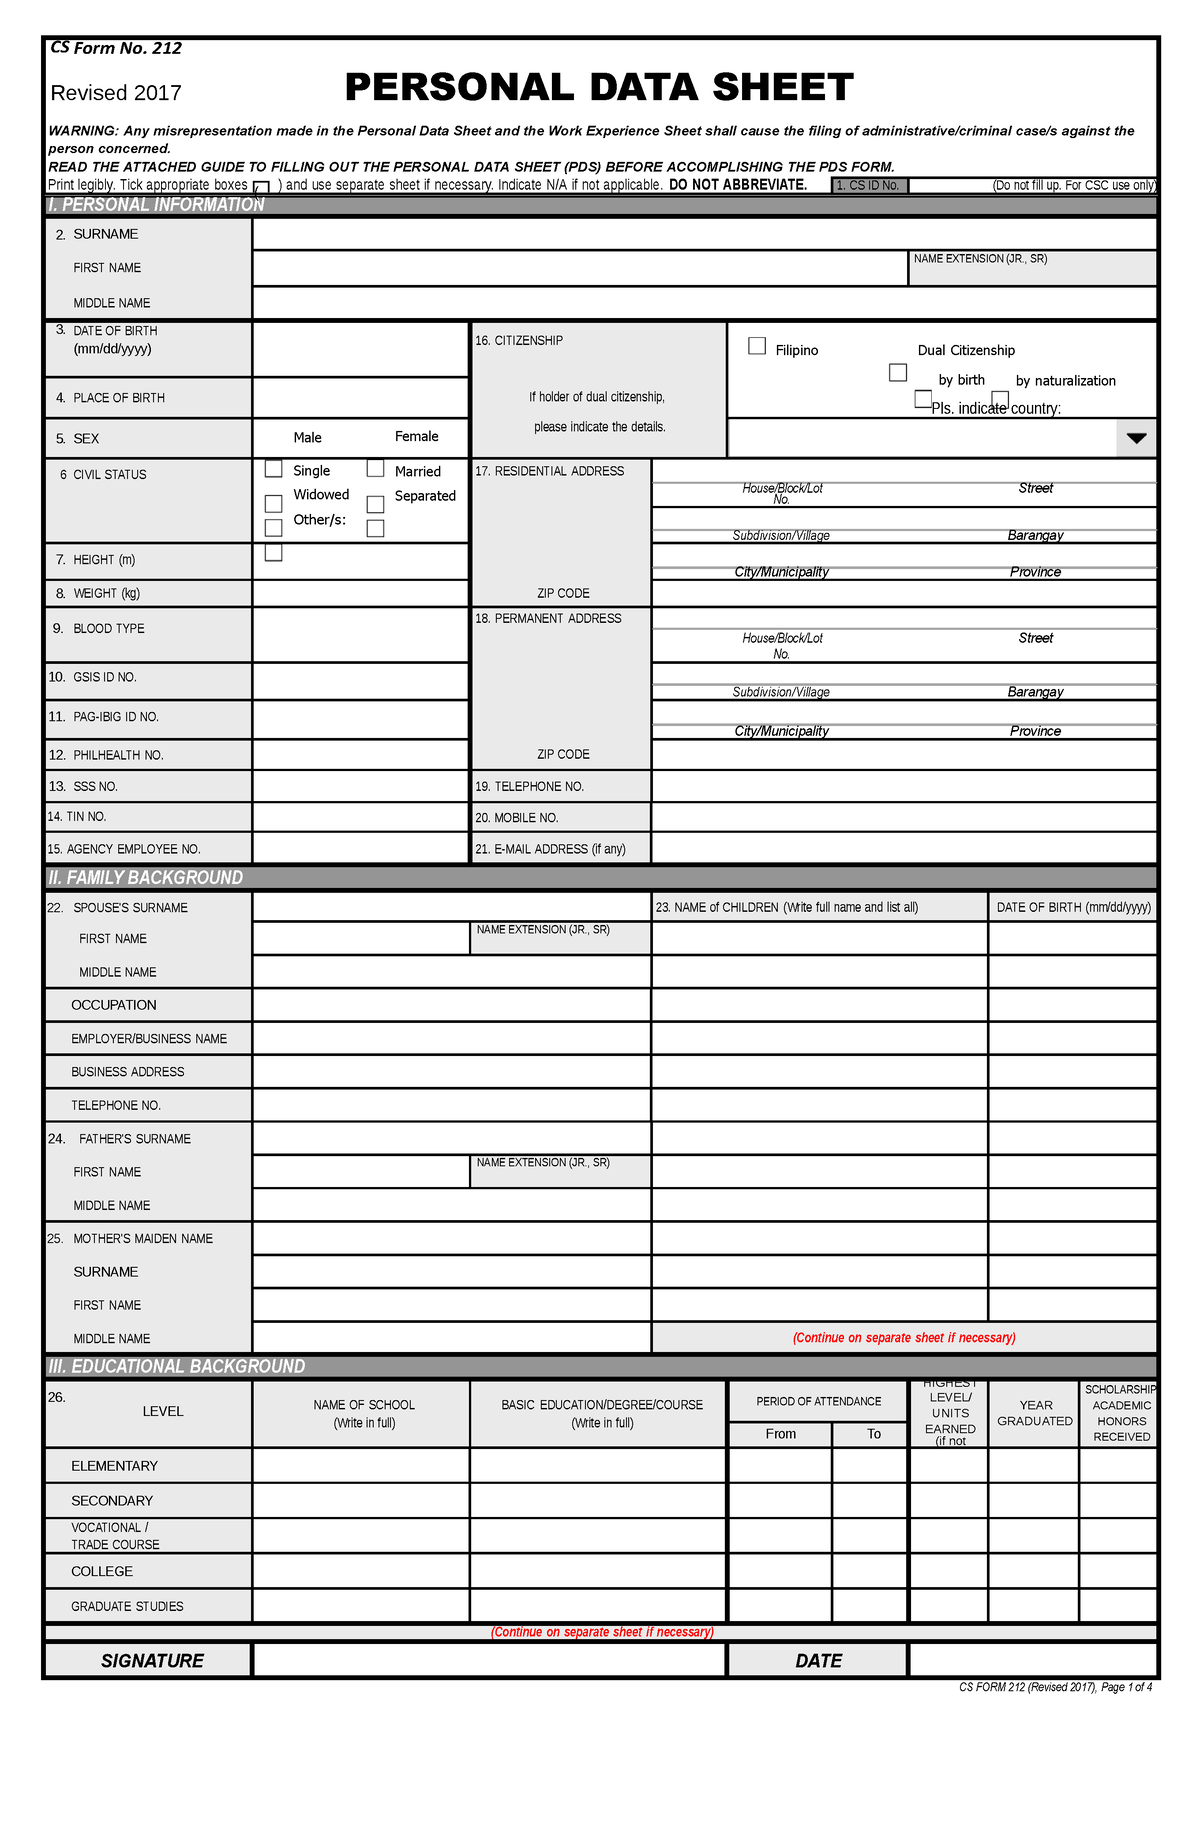 Personal Data Sheet Cs Form No Cs Form No 212 Revised 2017 Personal Data Sheet Warning Any 0941